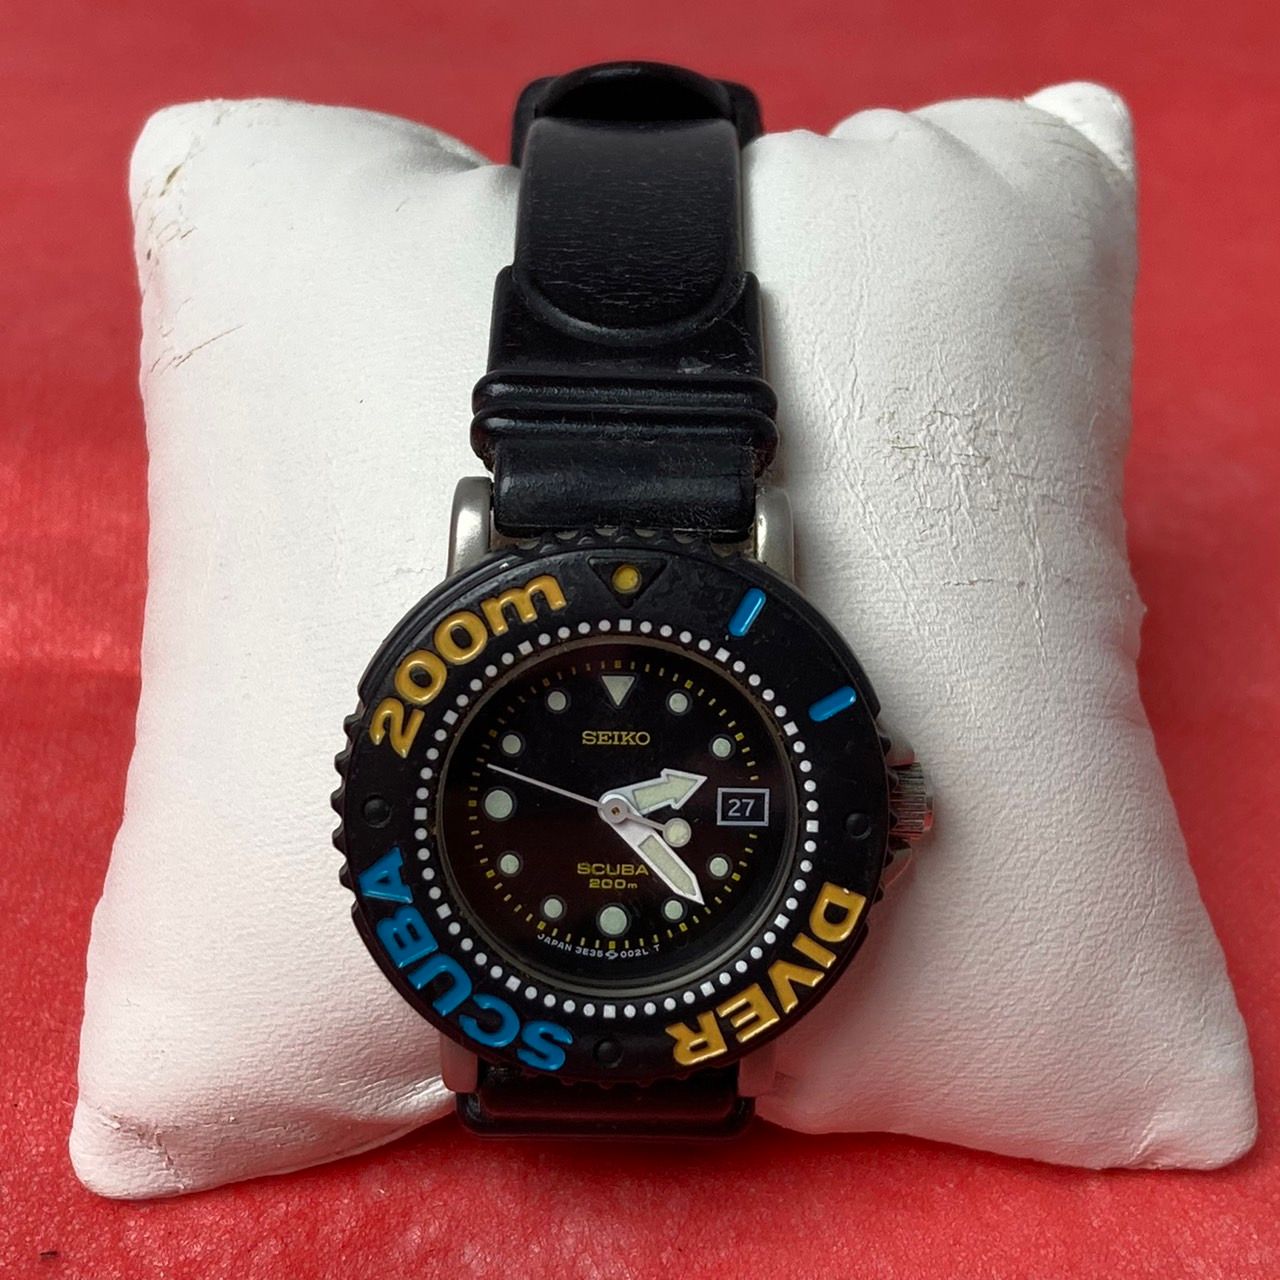 SEIKO】 クォーツ式腕時計 SCUBA ミニダイバー プラスチック製ベゼル-